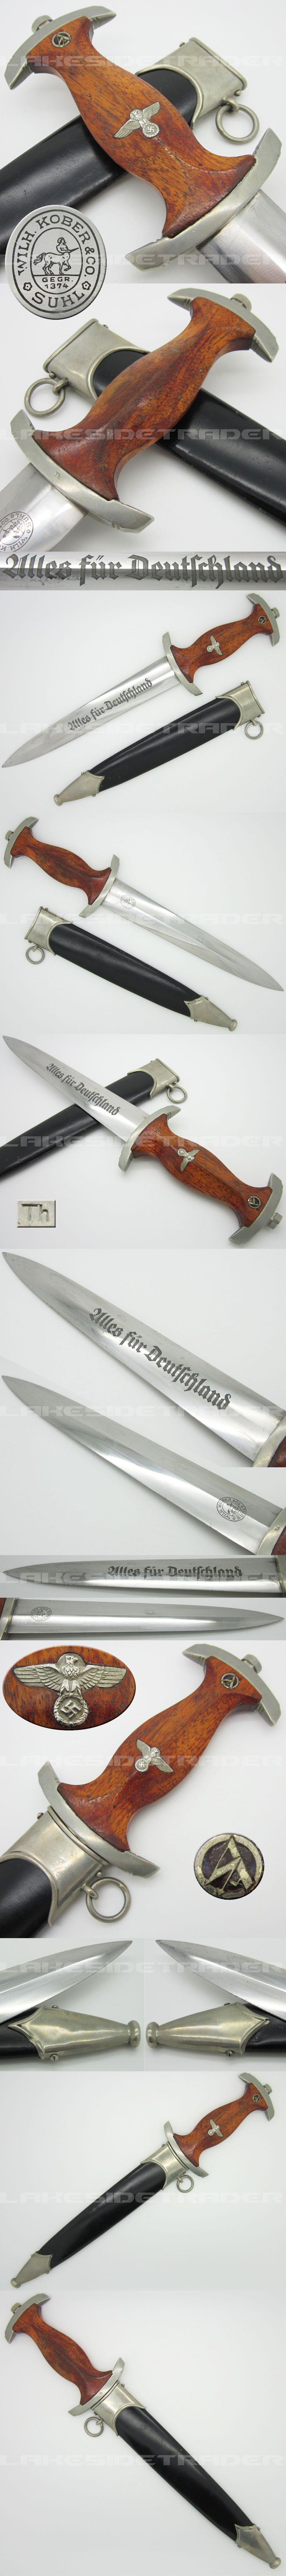 Early NSKK Dagger by W. Kober & Co.